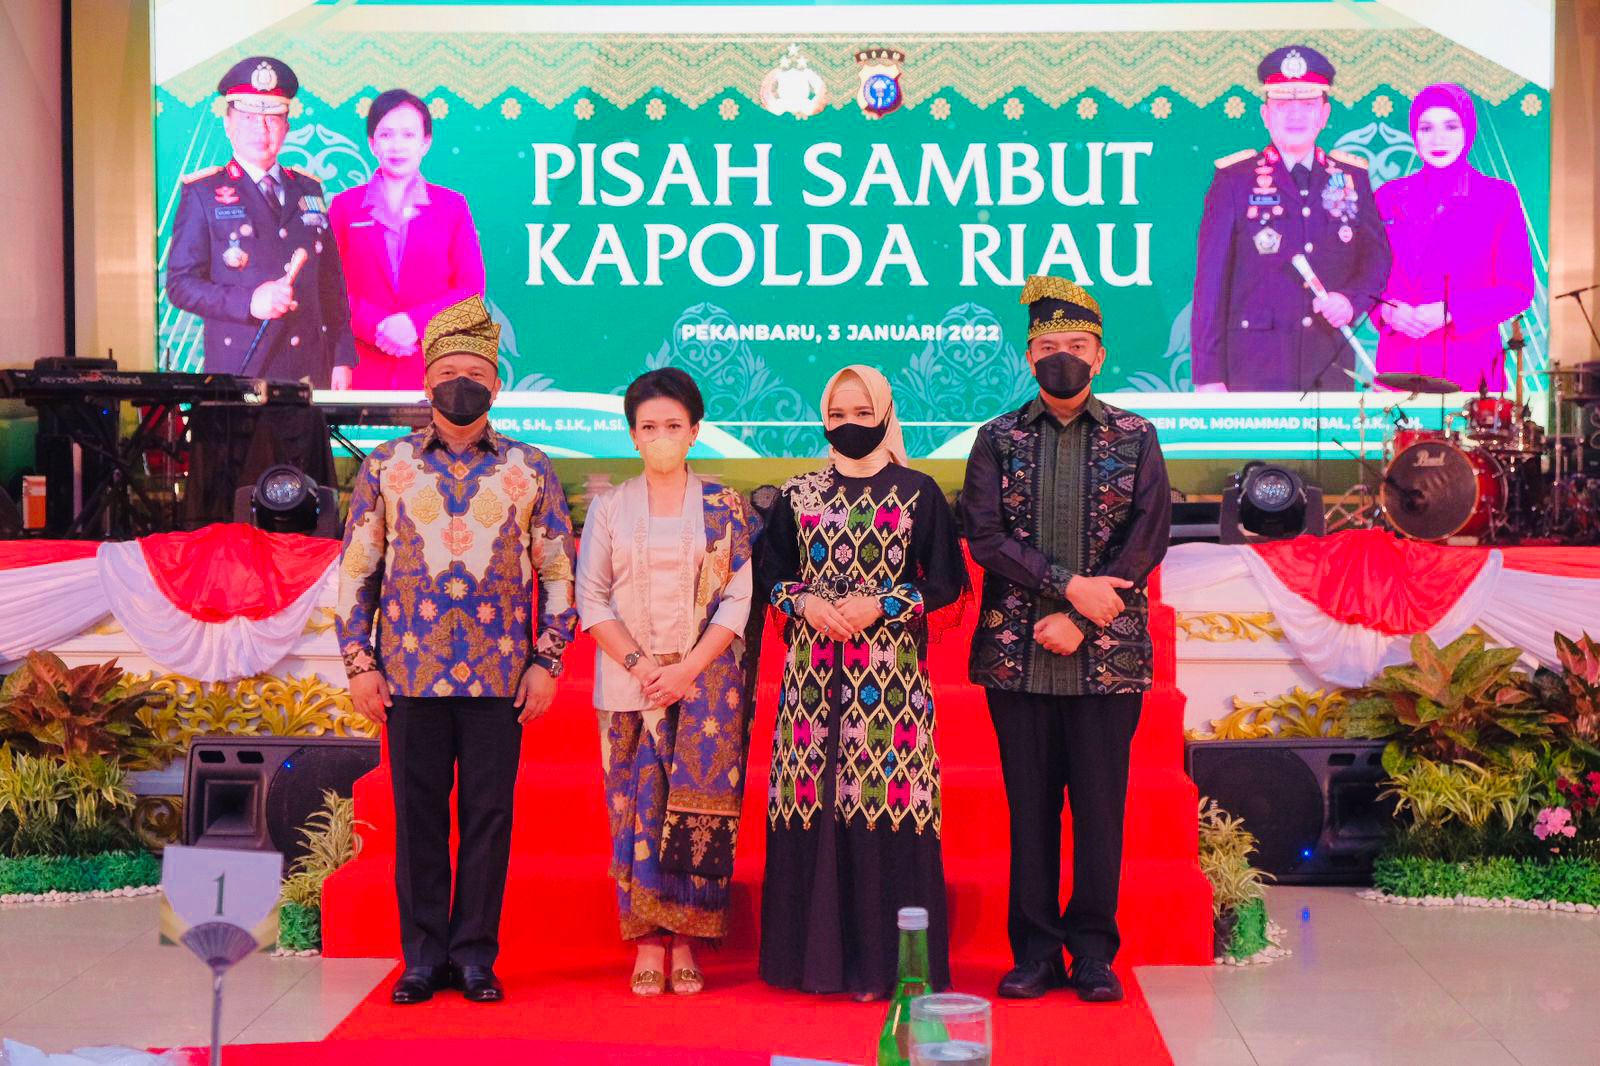 Malam Pisah Sambut, Kapolda dan Gubernur Riau Apresiasi Pengabdian Irjen Agung